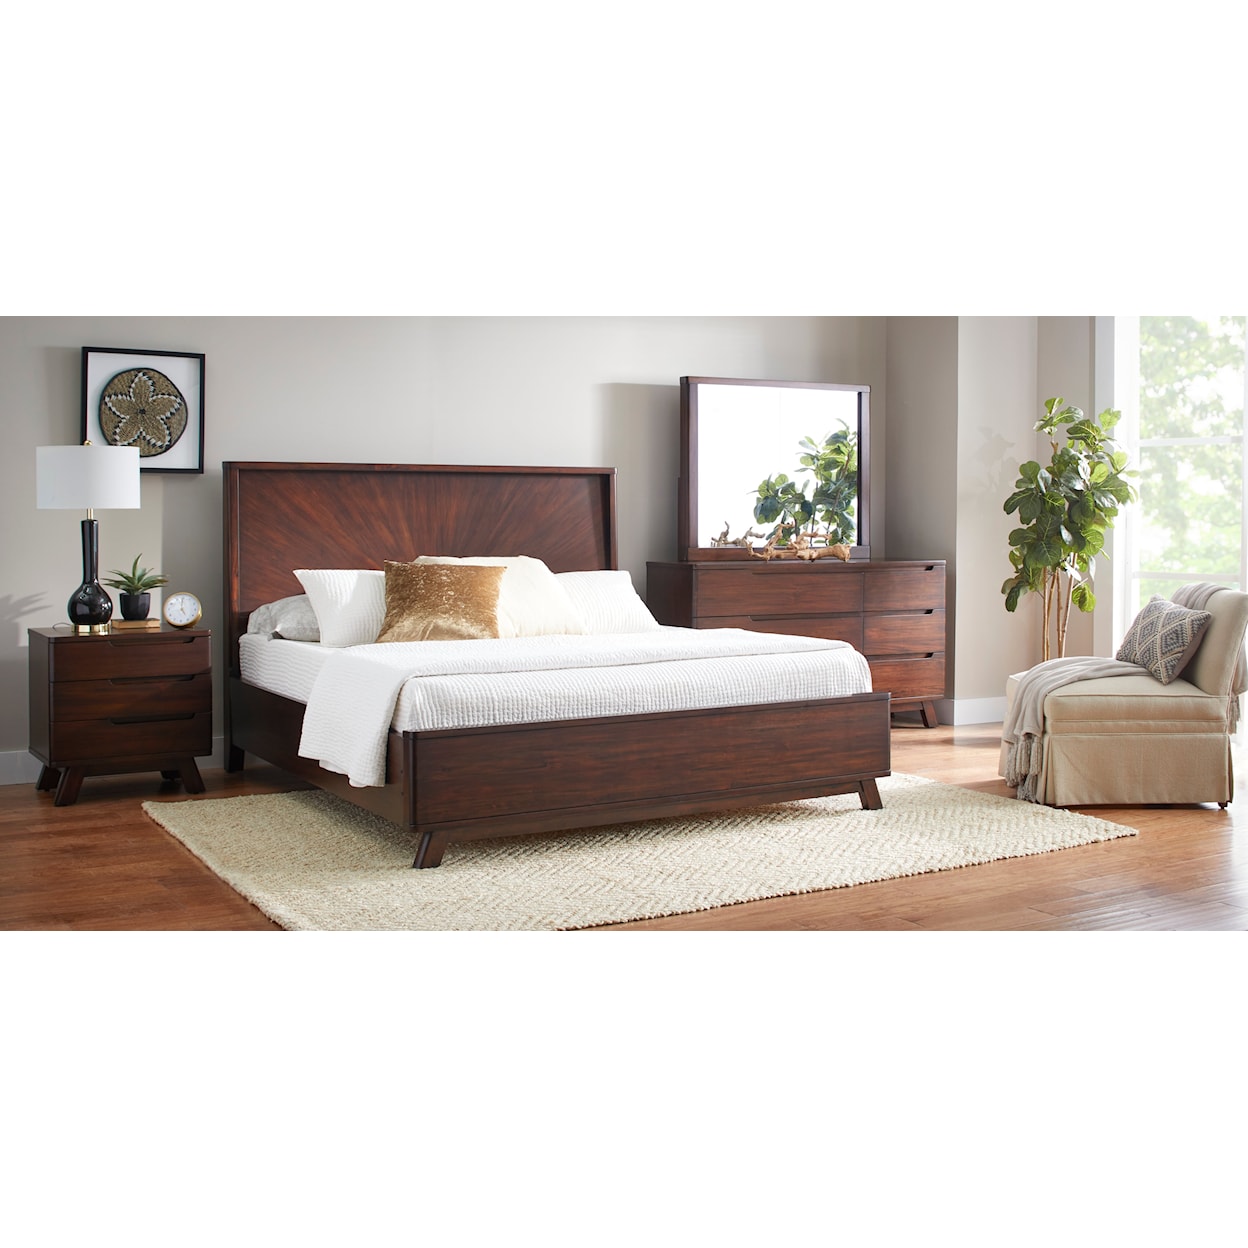 Napa Furniture Design Sahara King Bed Frame 